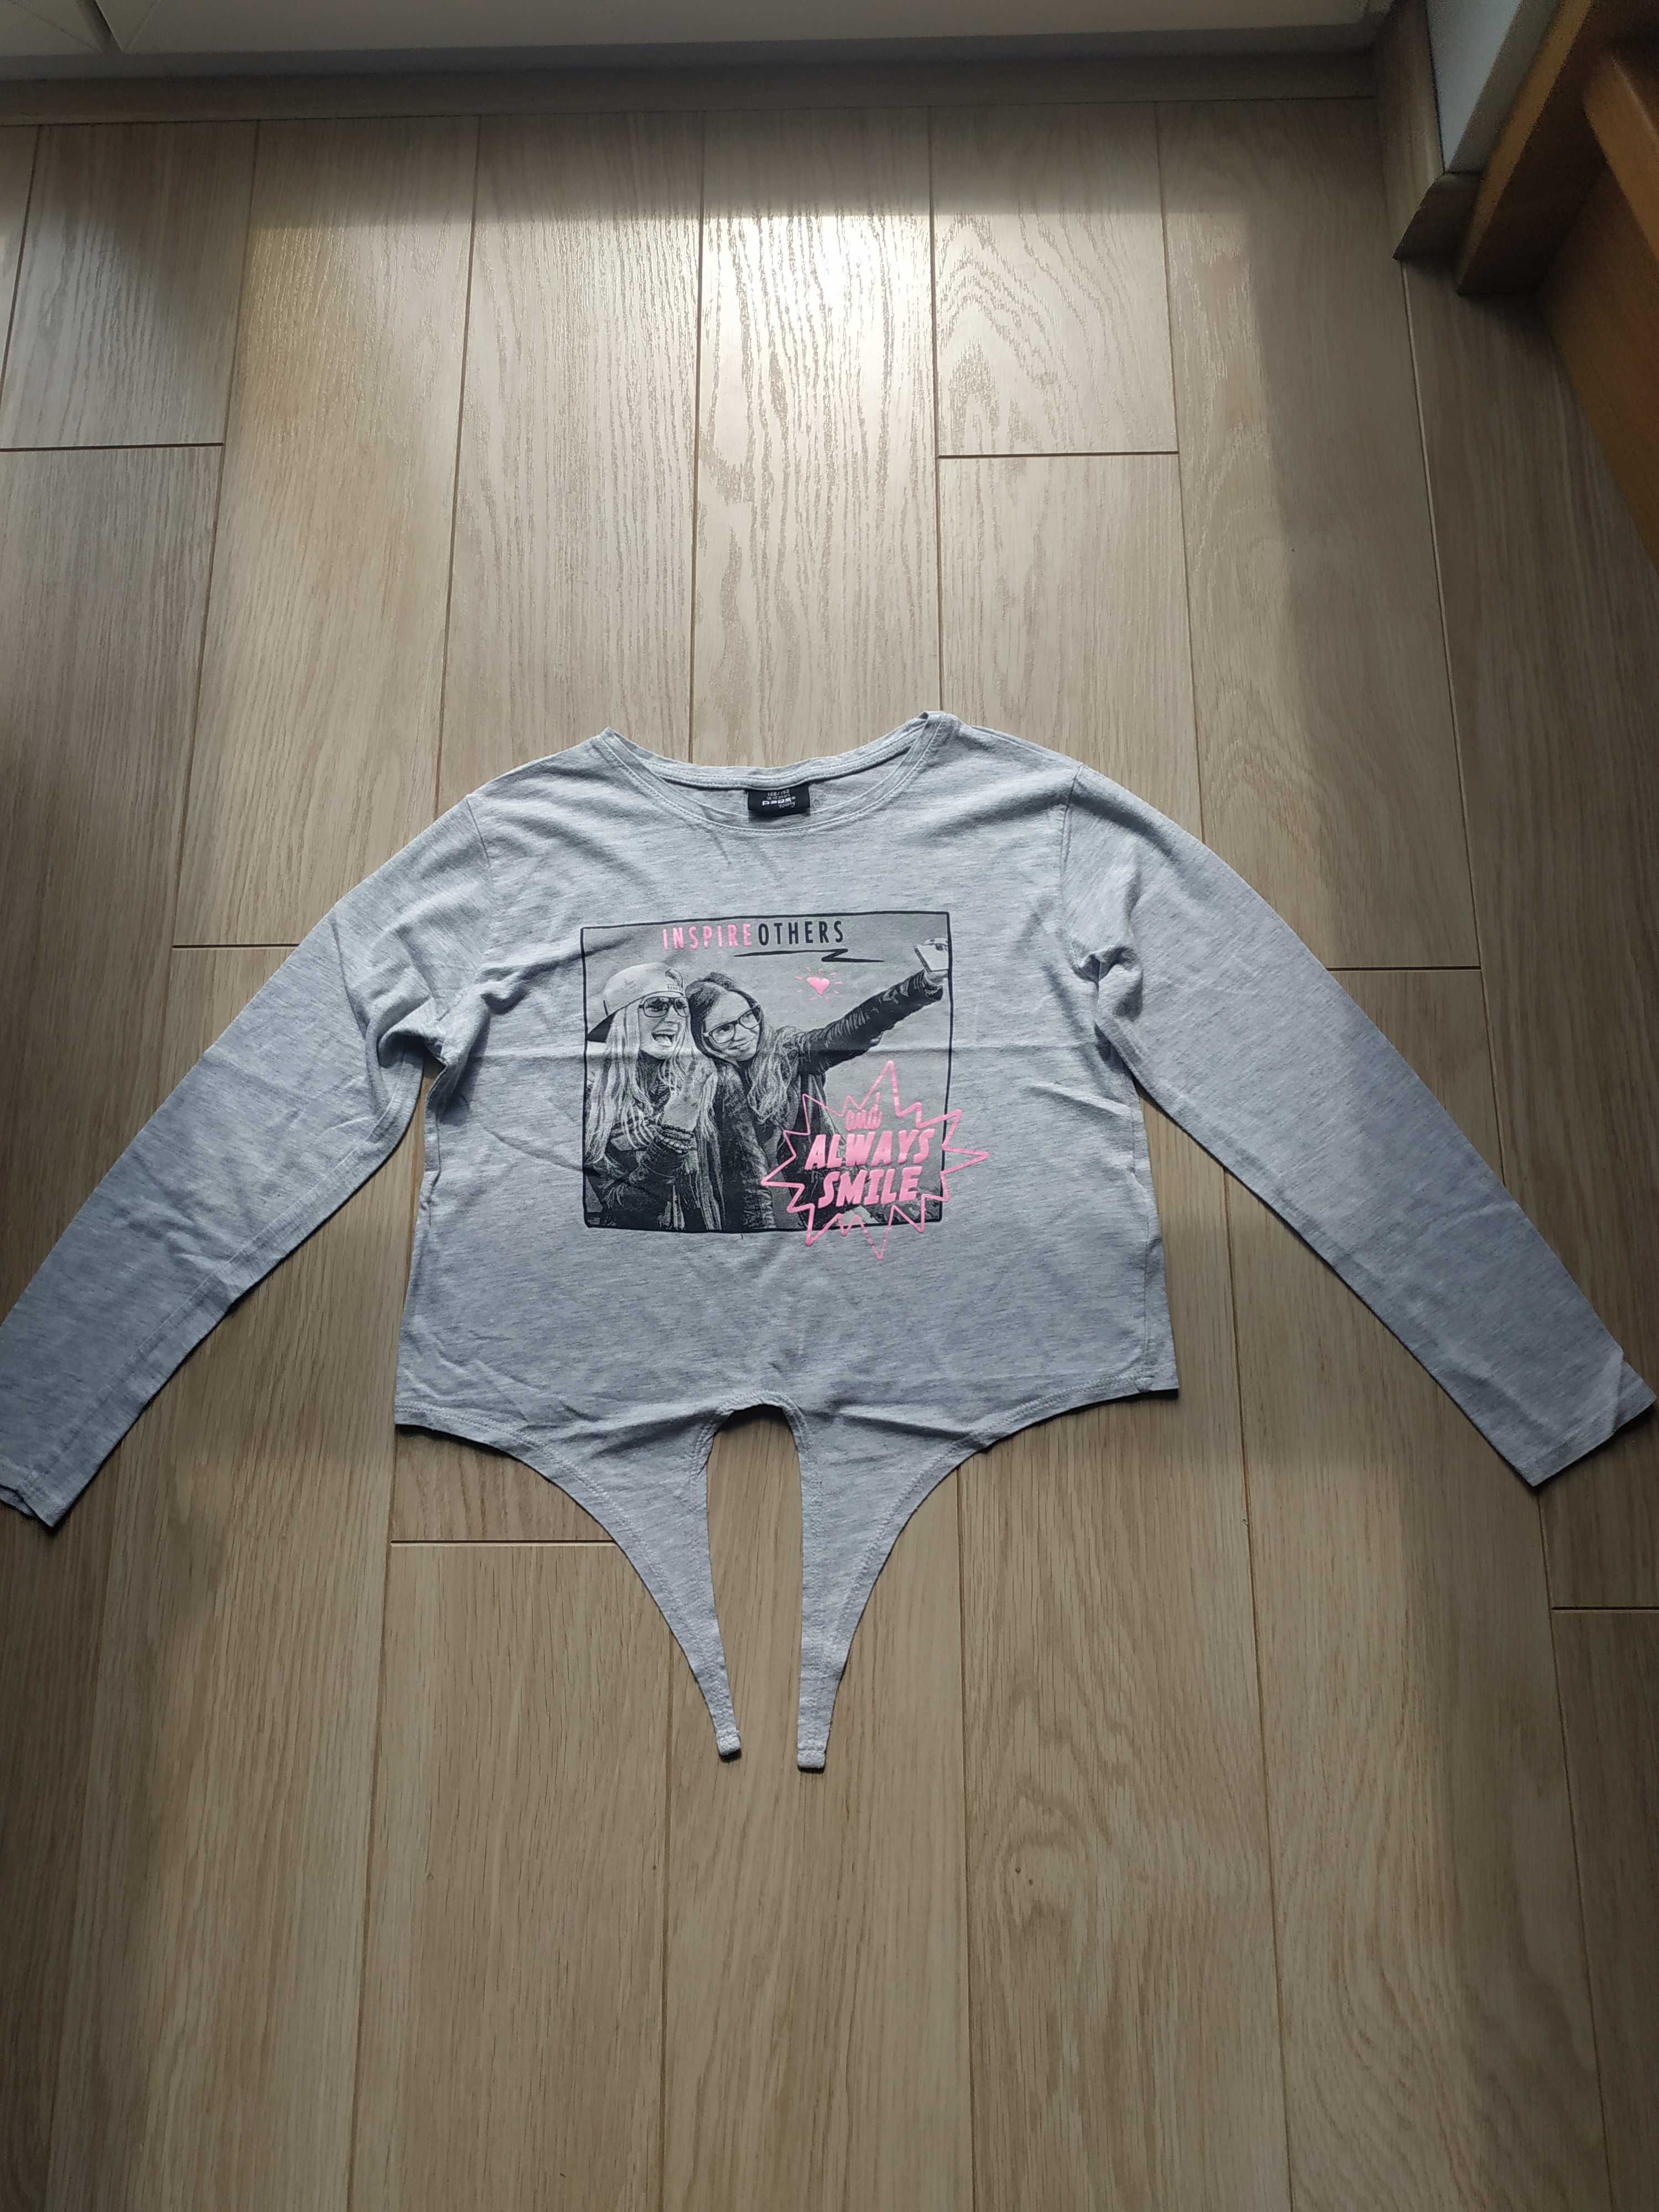 Bluzka koszulka dla dziewczynki Pageone Young roz 146/152 cm - ona :)